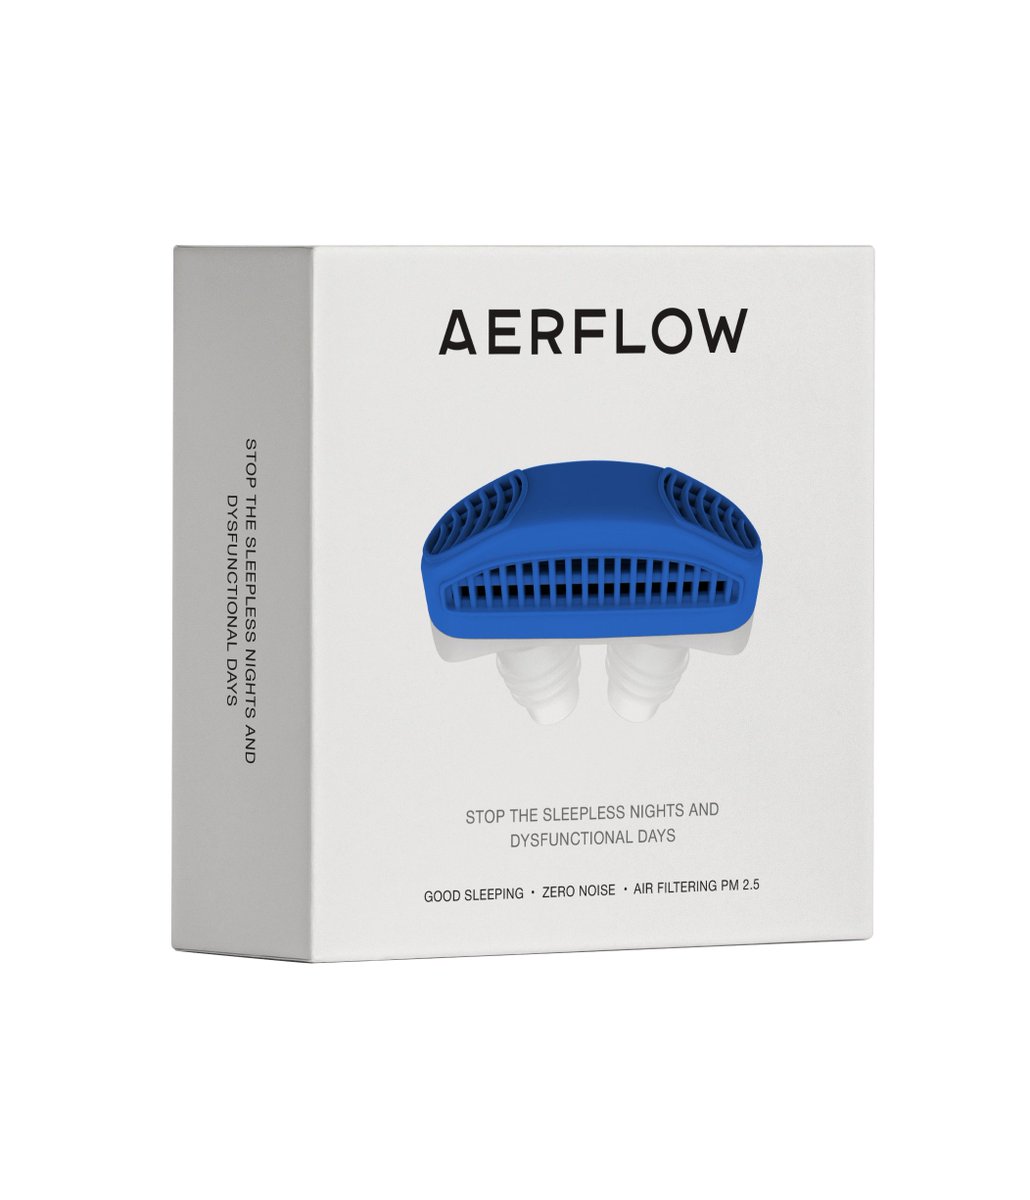 Aerflow - achat - pas cher - mode d’emploi - composition - at walmart